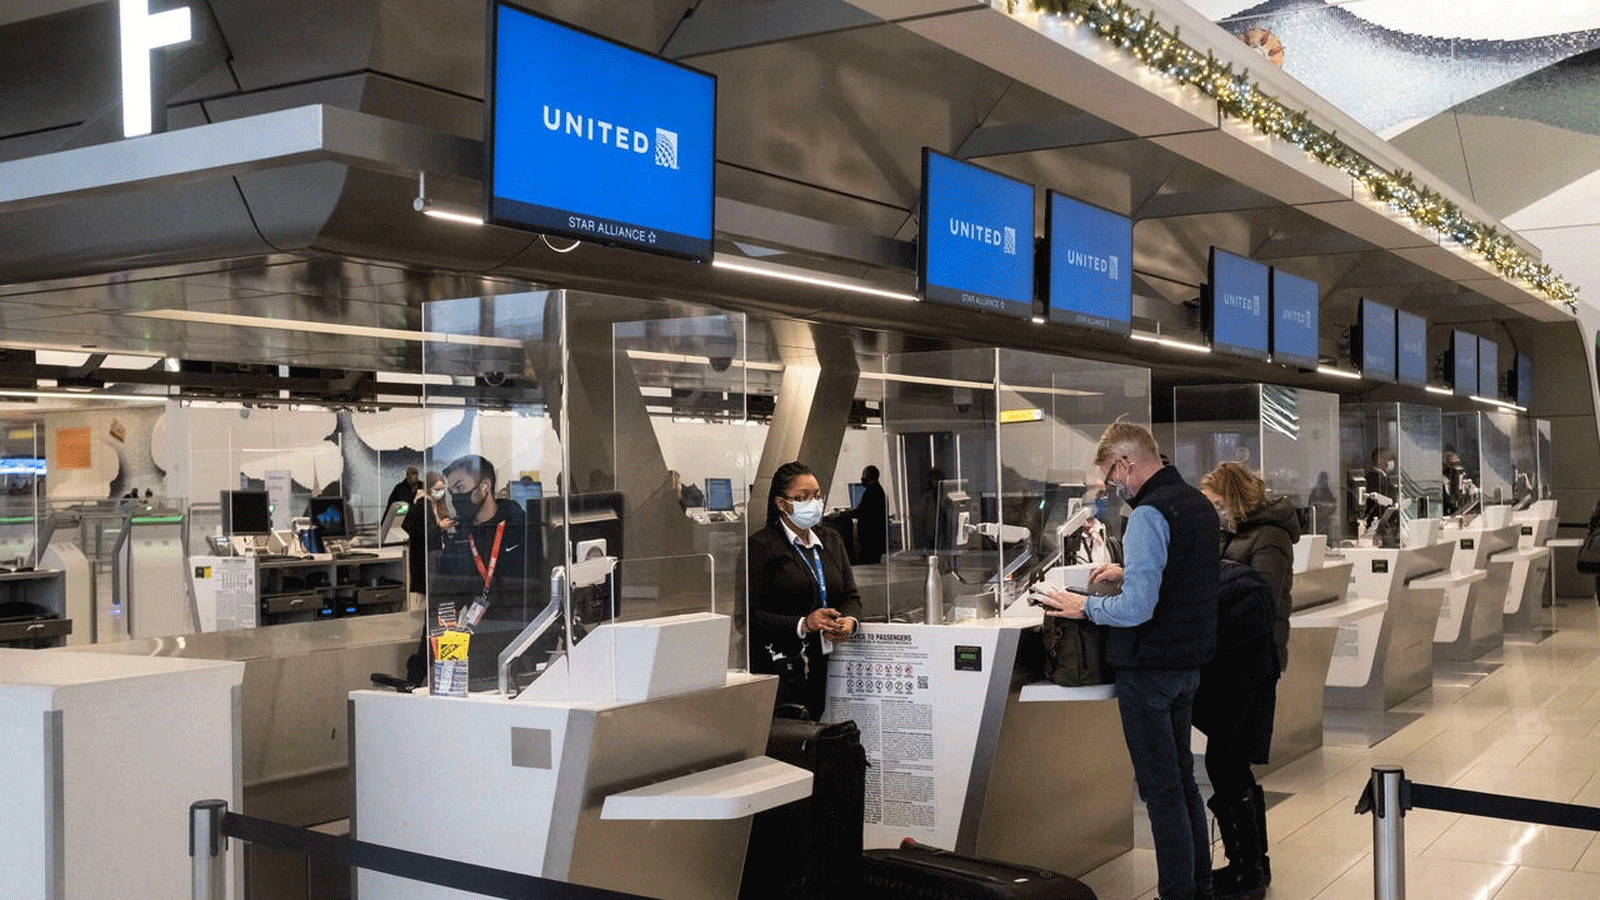 المسافرون يقومون بتسجيل الوصول في مطار LaGuardia في مدينة نيويورك في 24 كانون الأول\ديسمبر 2021.